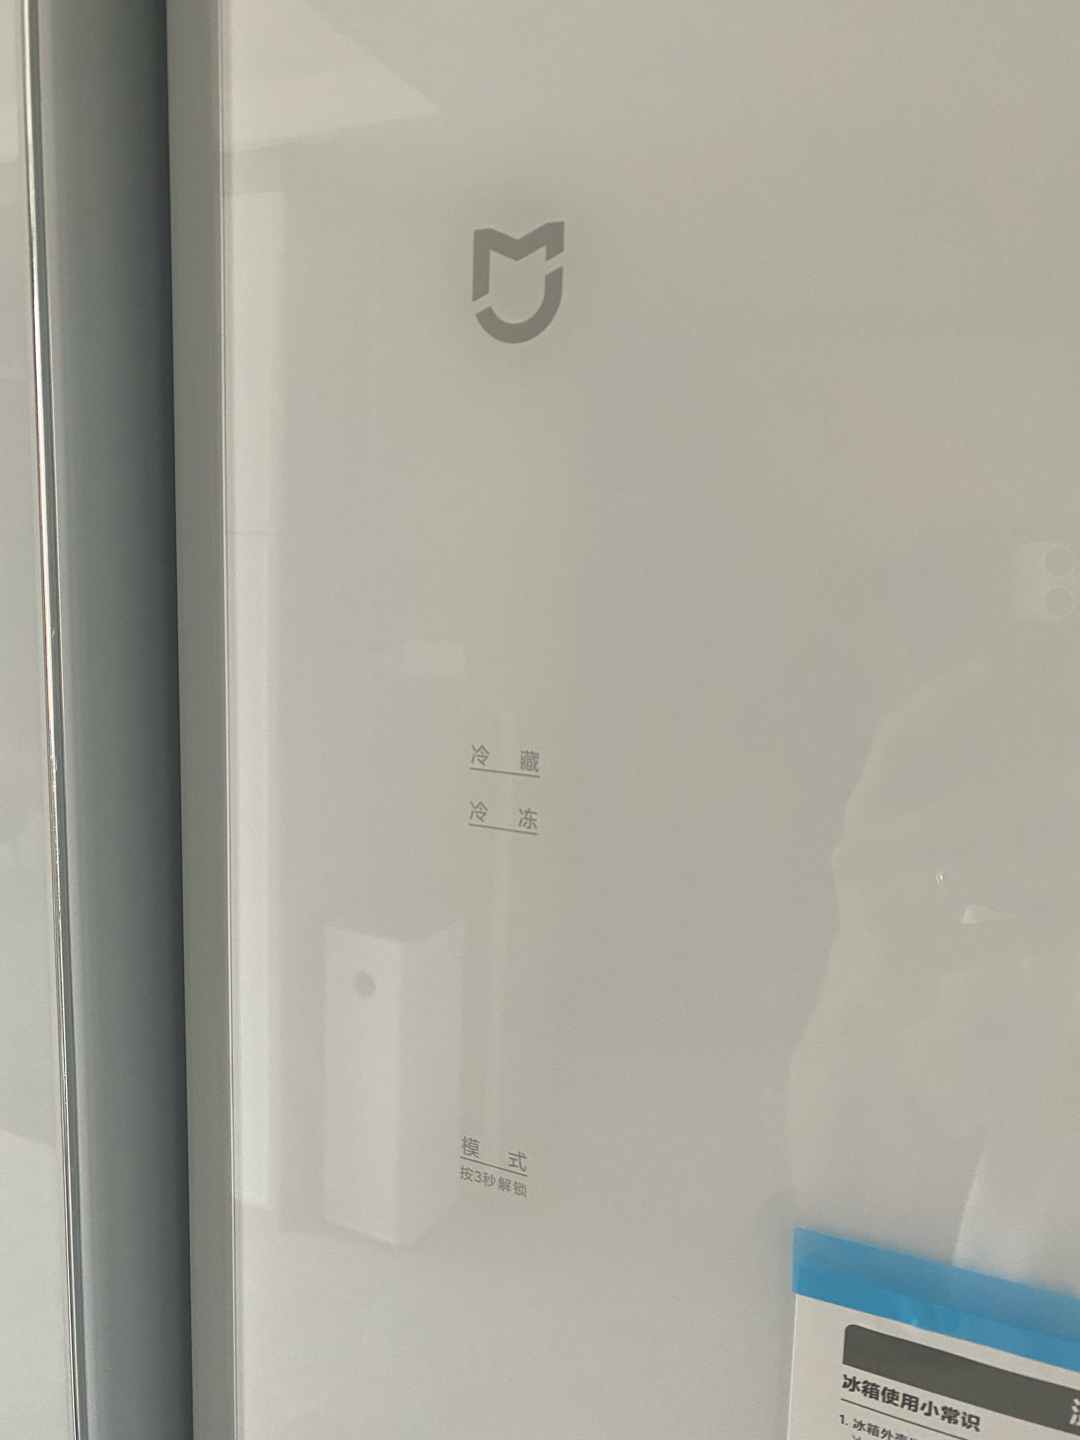 Tủ Lạnh 2 Cánh Xiaomi Mijia 502L